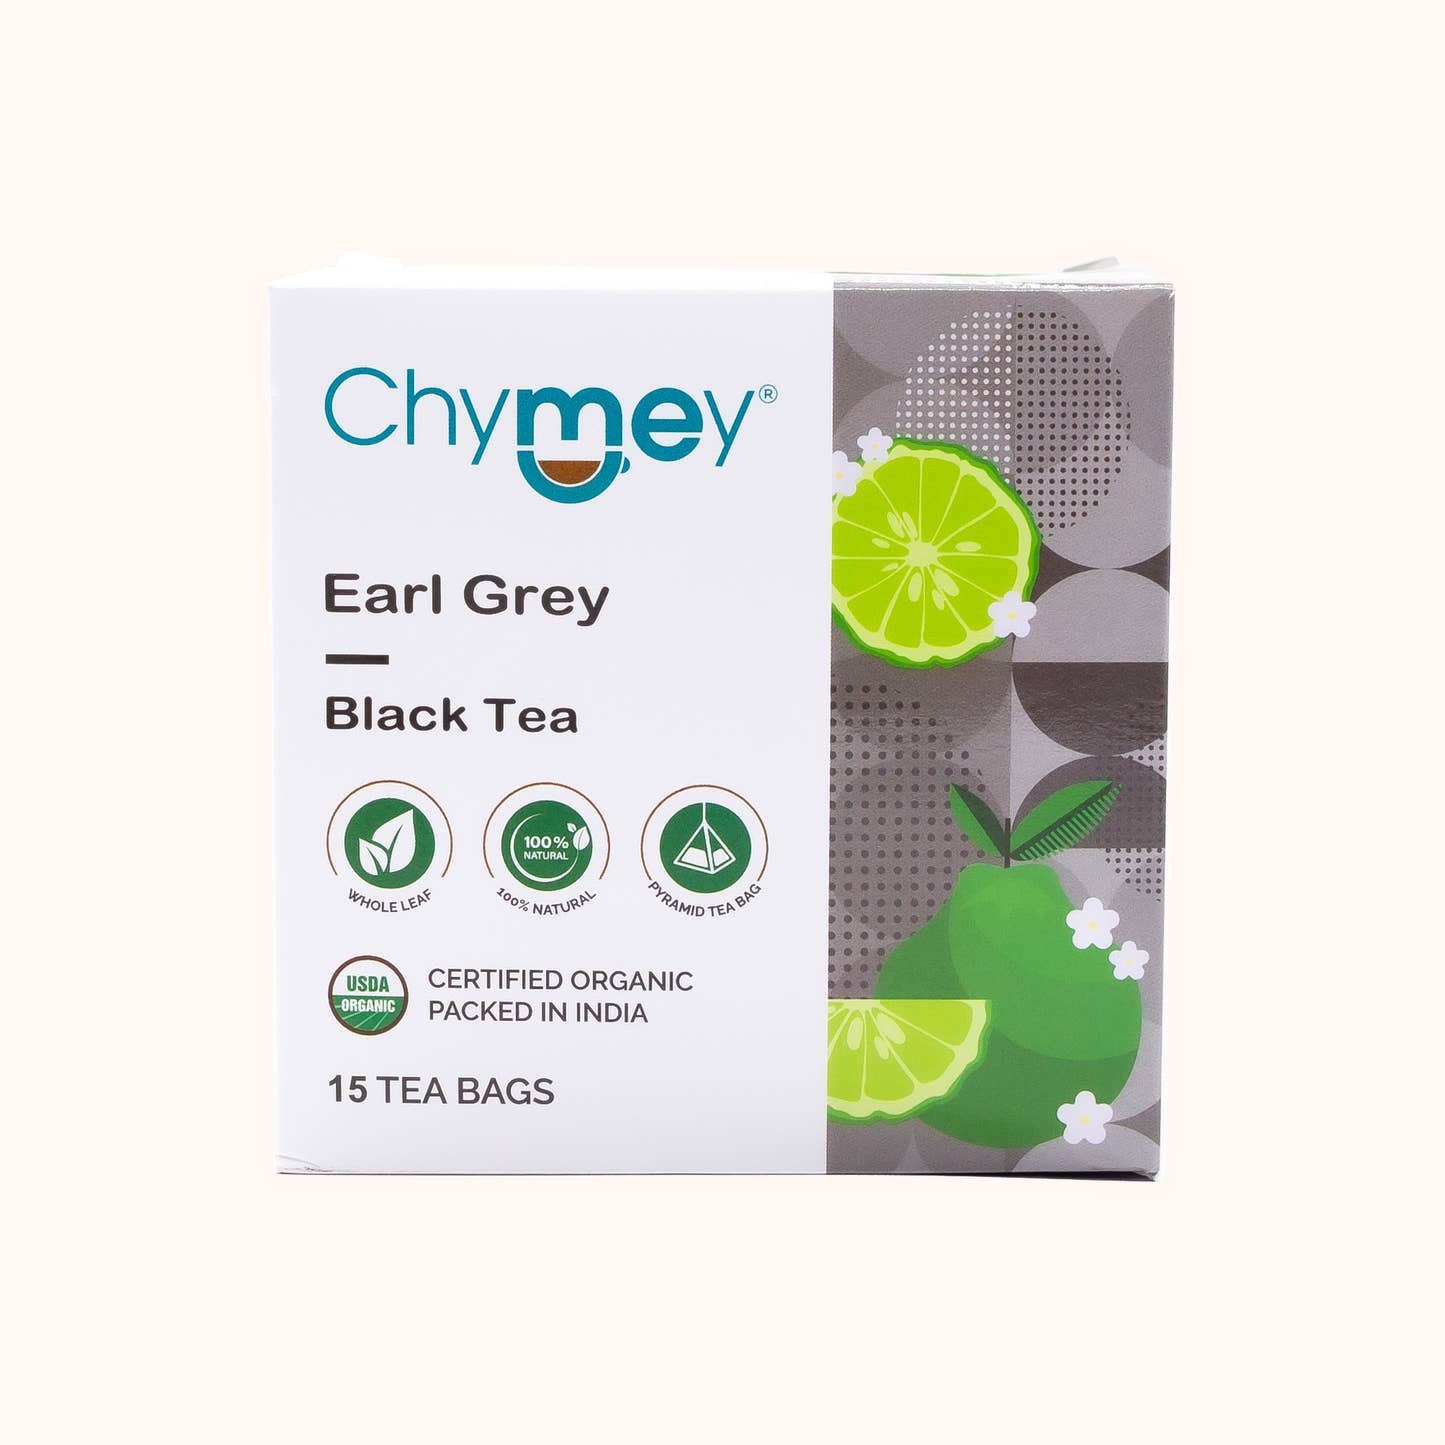 Earl Grey Black Tea by Chymey Box